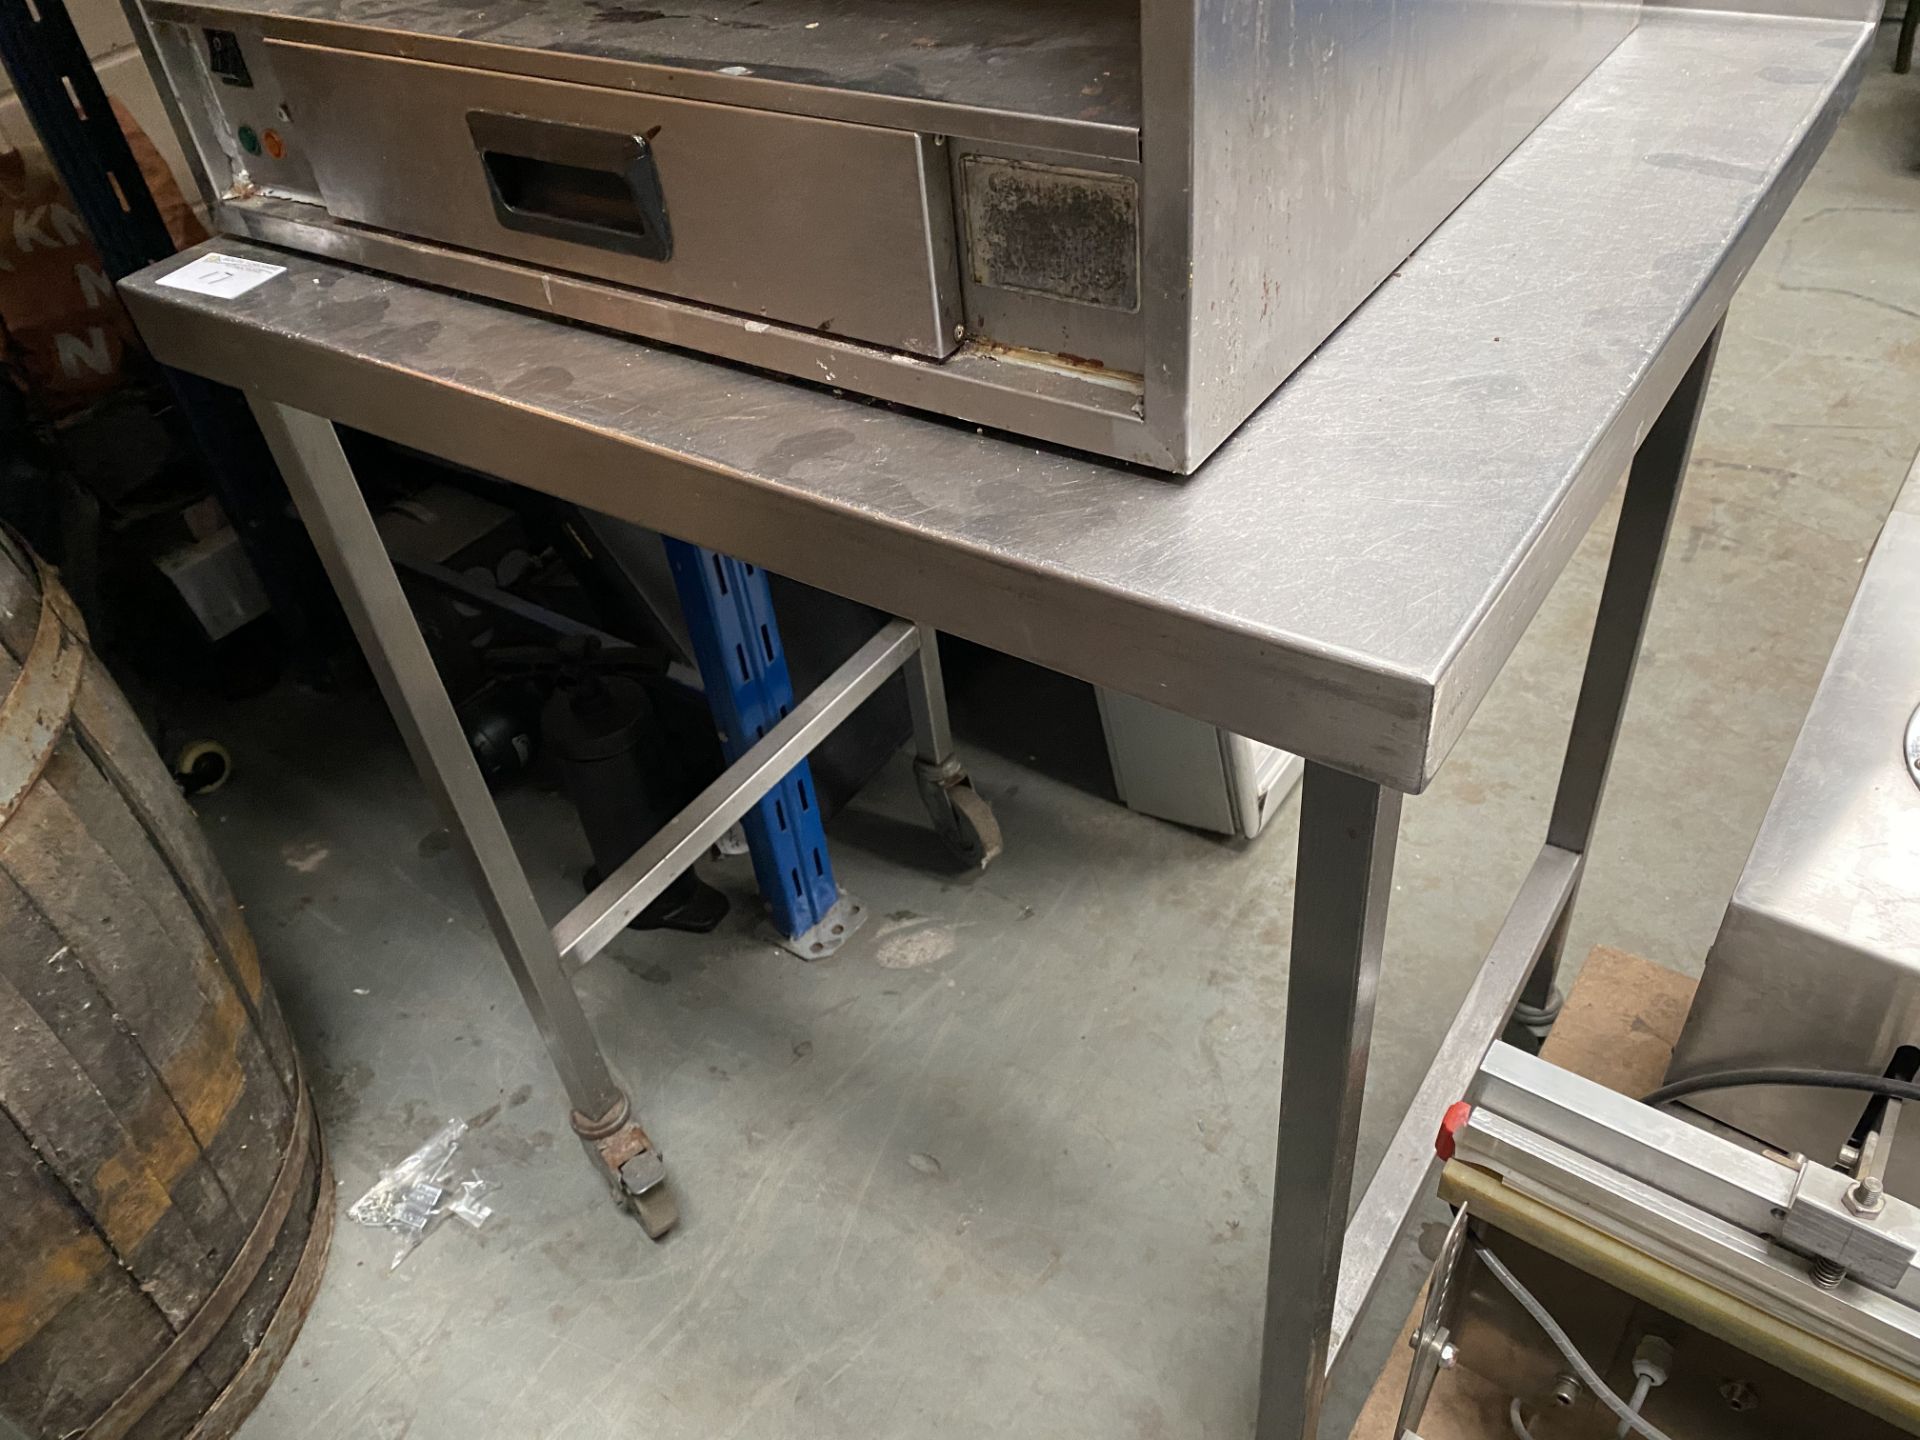 Stainless Steel Prep Table On Wheels